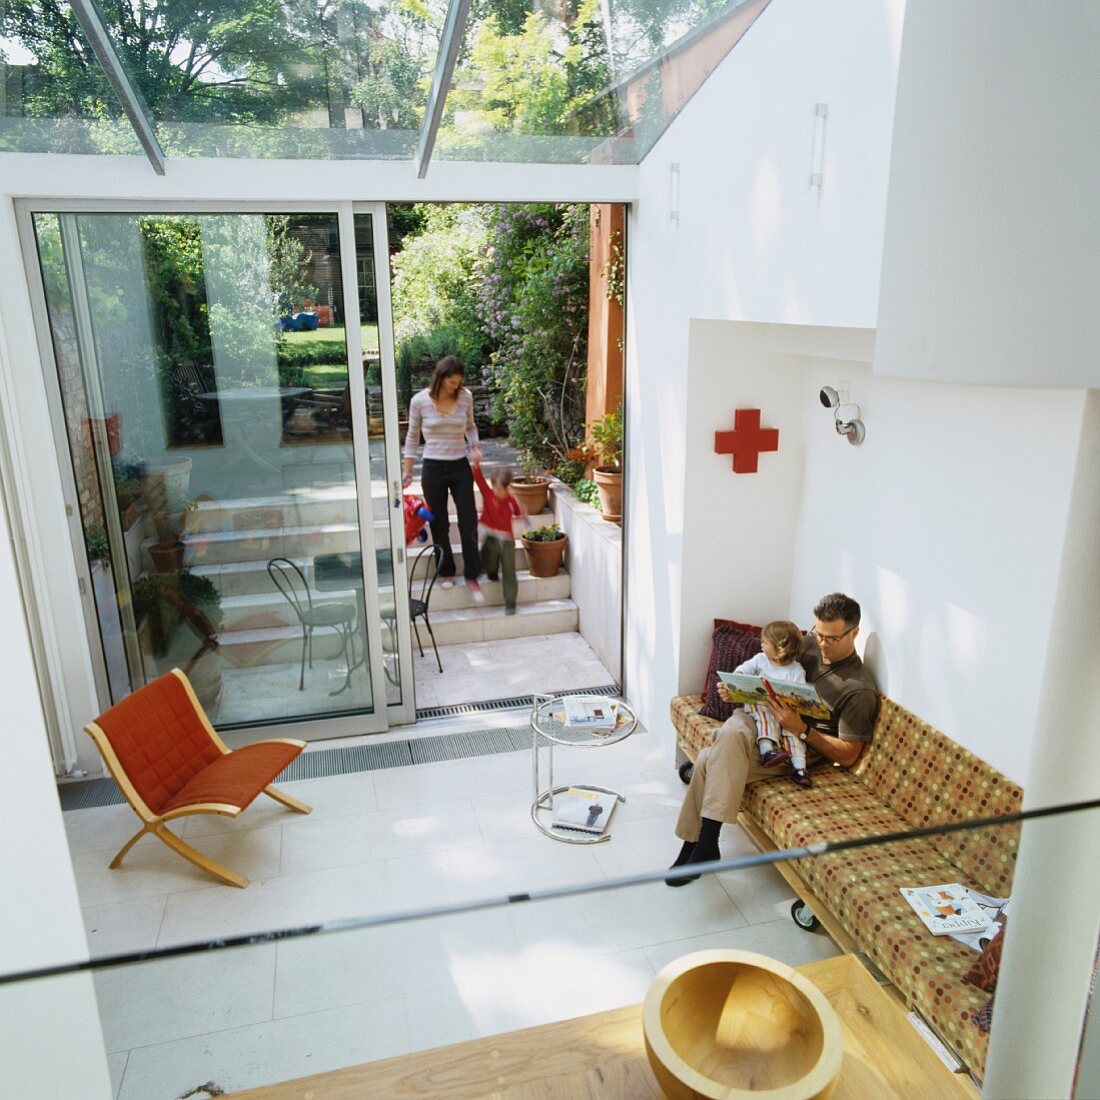 Familie in zeitgenössischem Wohnhaus - Blick von oben auf Couch und Klassiker Beistelltisch in minimalistischem Wohnzimmer mit Gartenzugang